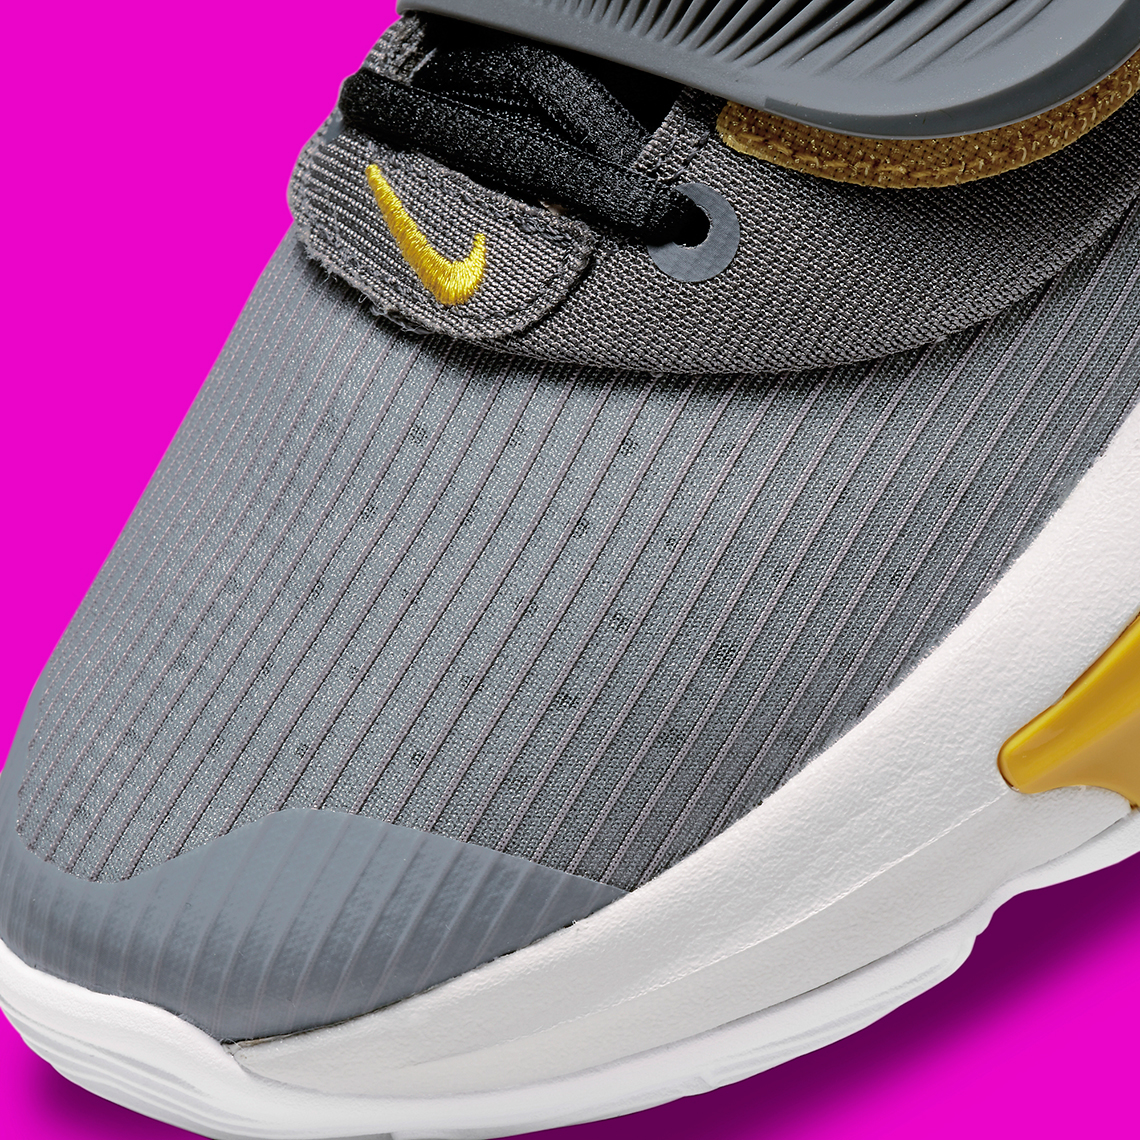 Nike Zoom Freak 3 Low Battery DA0694-006 Release Date | SneakerNews.com